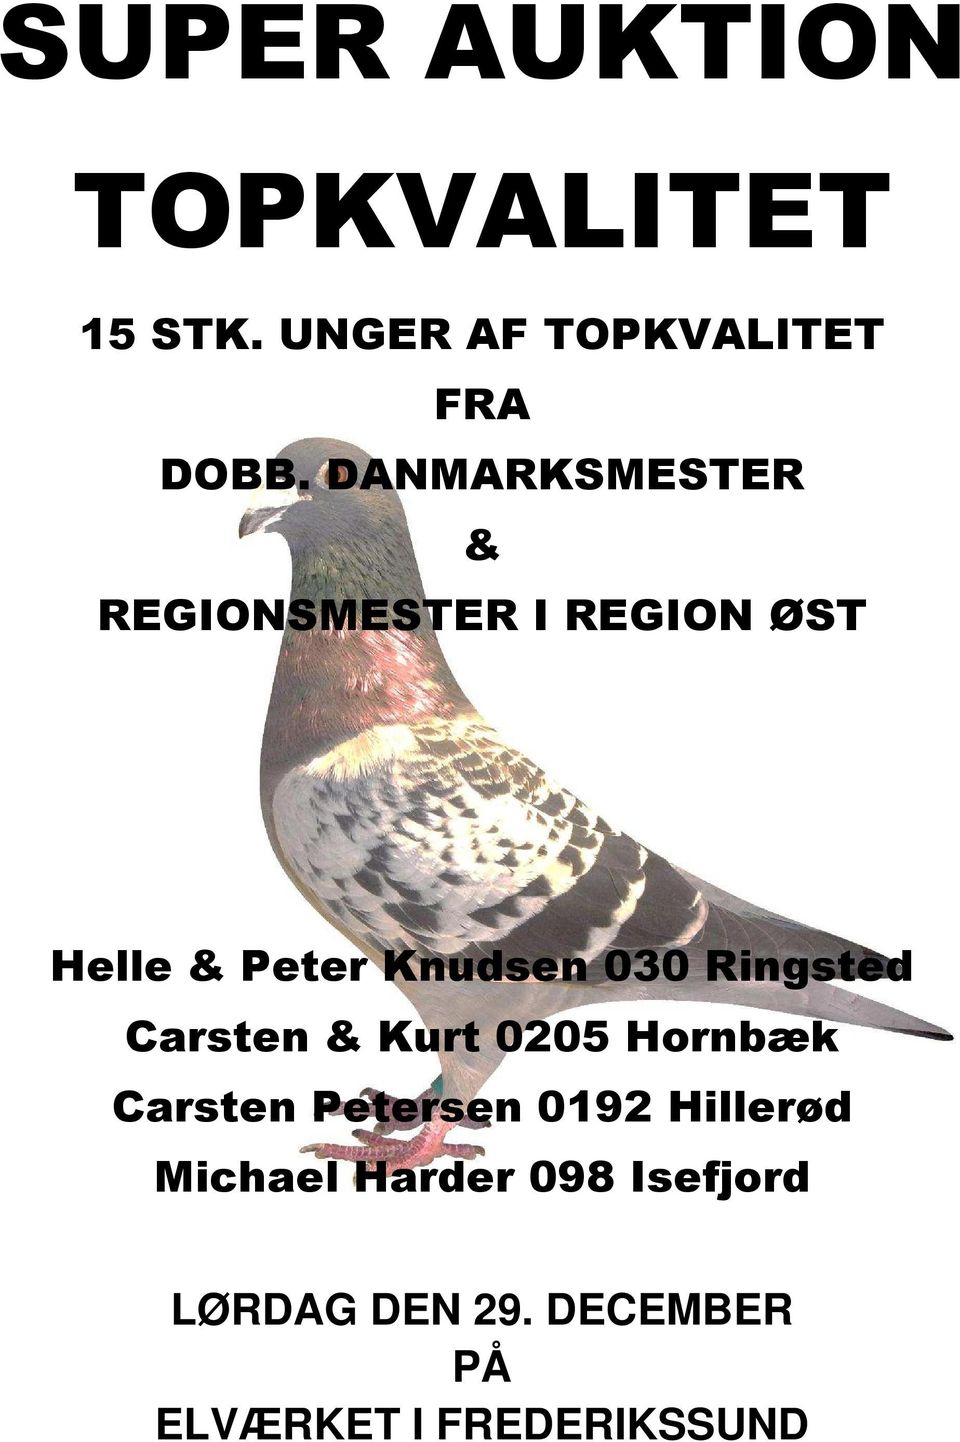 Ringsted Carsten & Kurt 0205 Hornbæk Carsten Petersen 0192 Hillerød